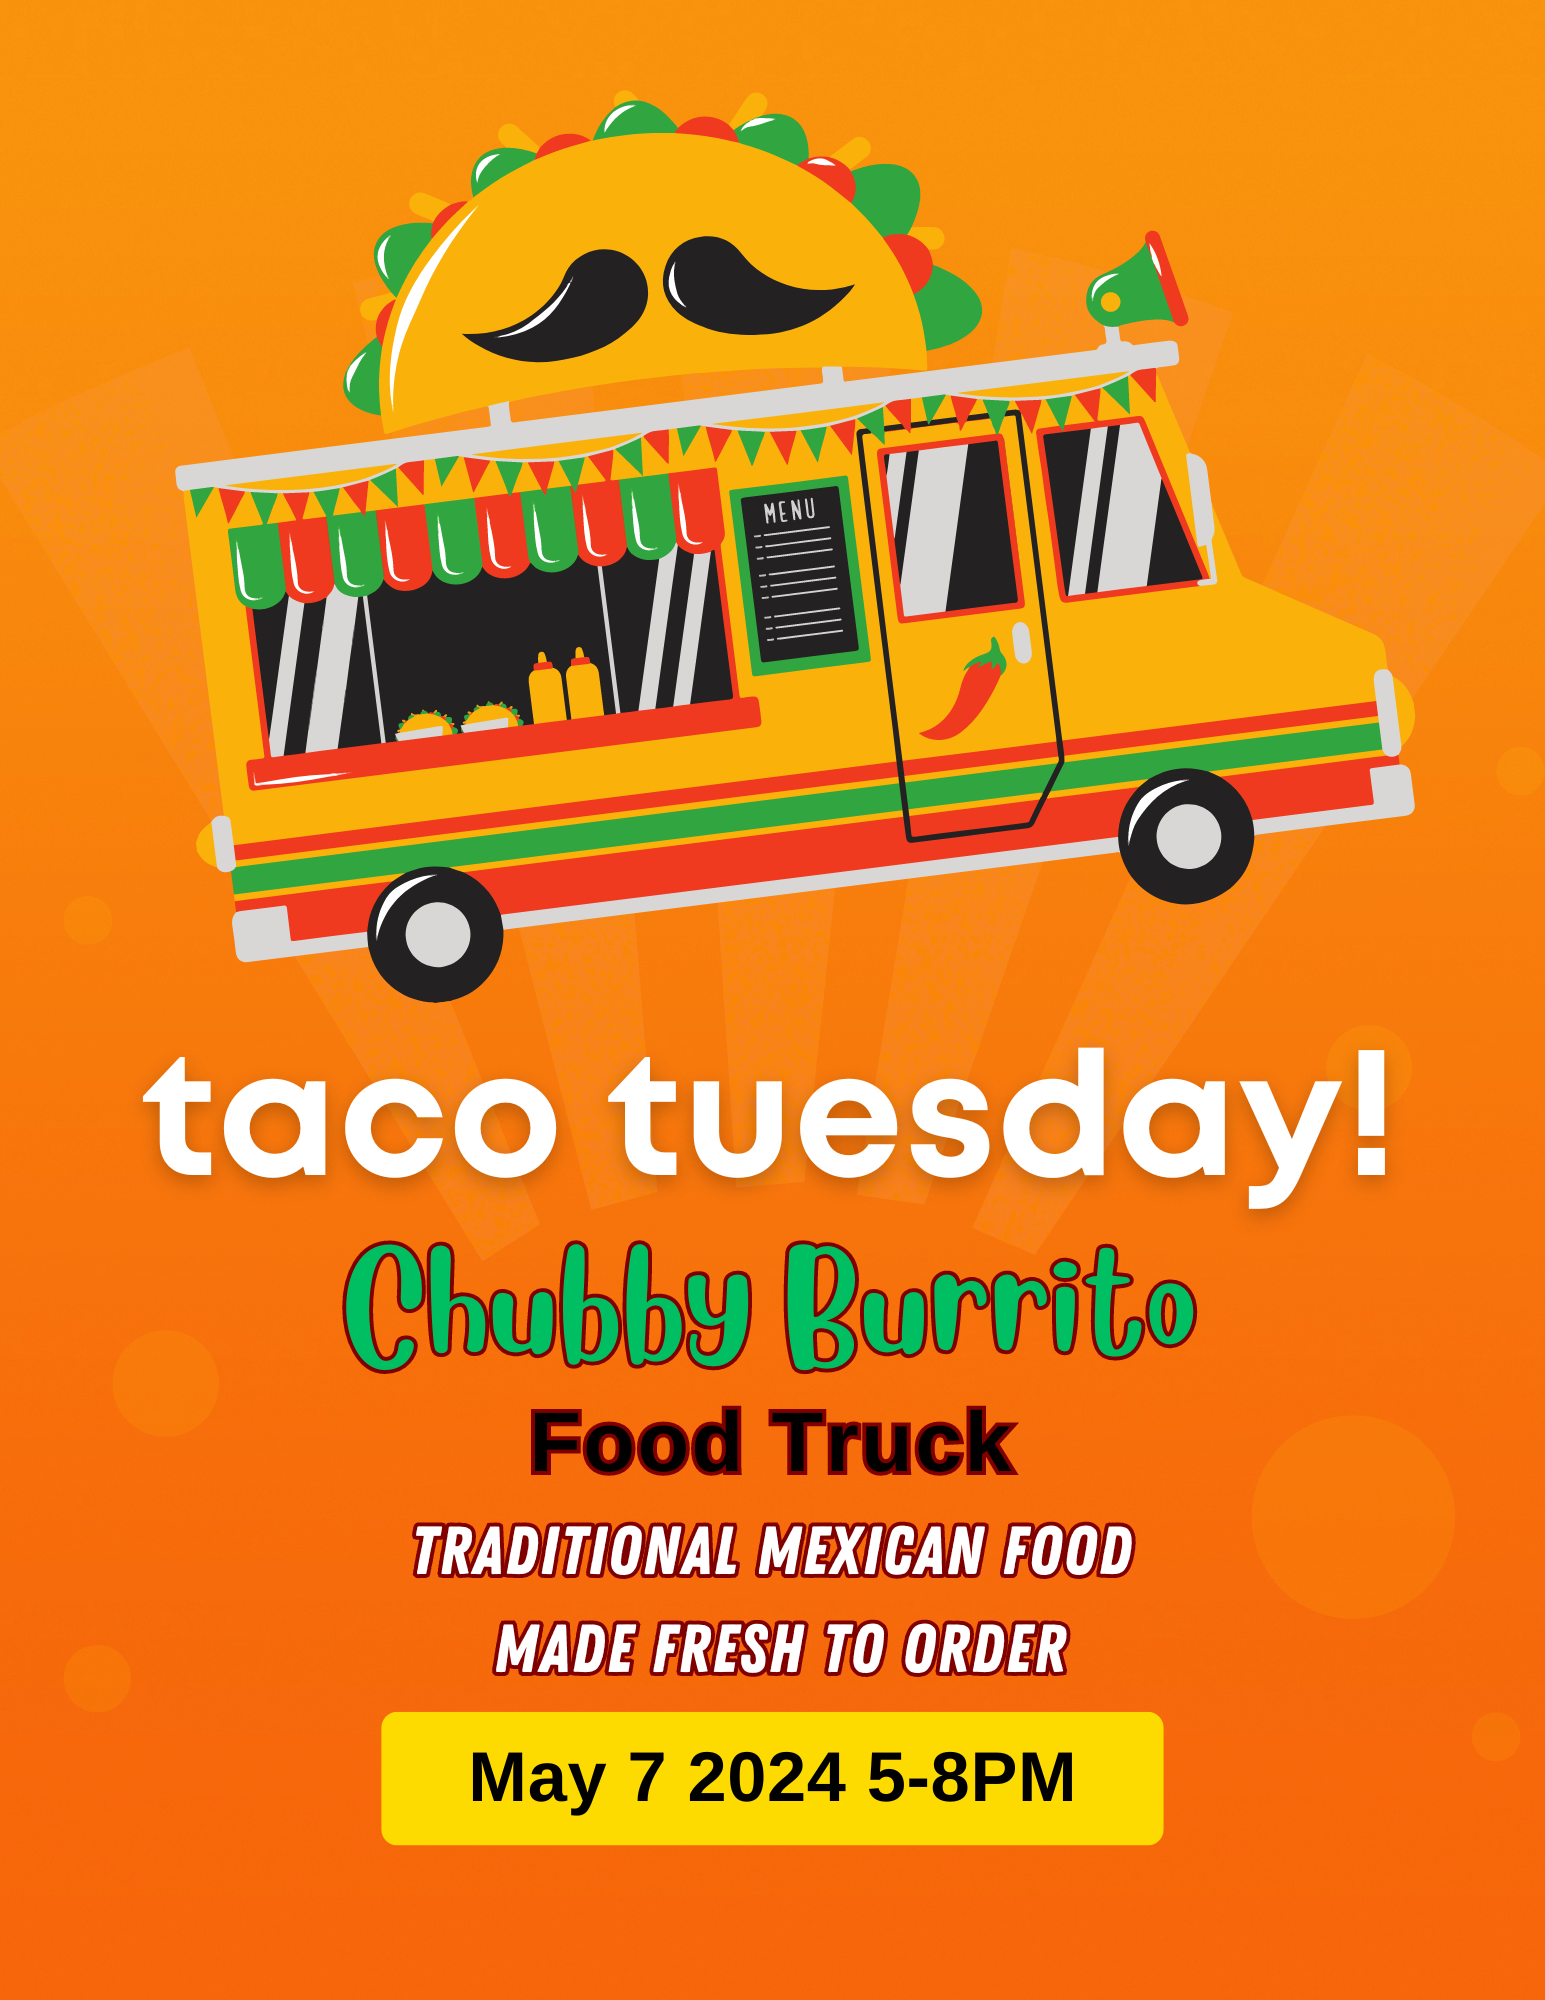 Taco Tuesday! May 7 '24